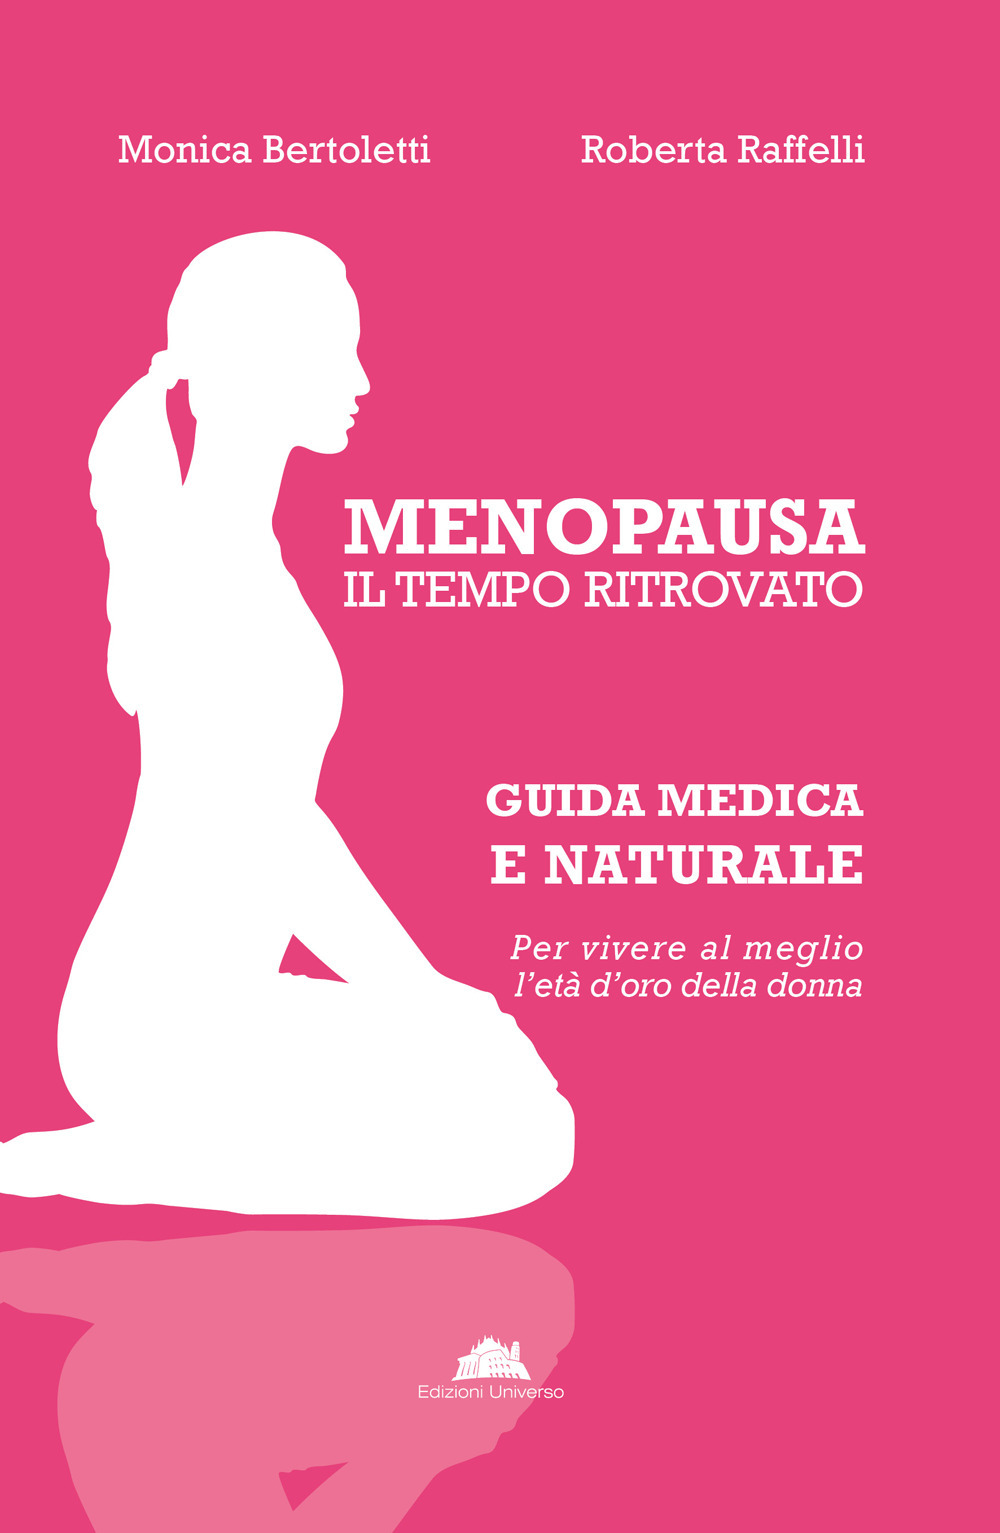 Menopausa, il tempo ritrovato. Guida medica e naturale per vivere al meglio l'età d'oro della donna